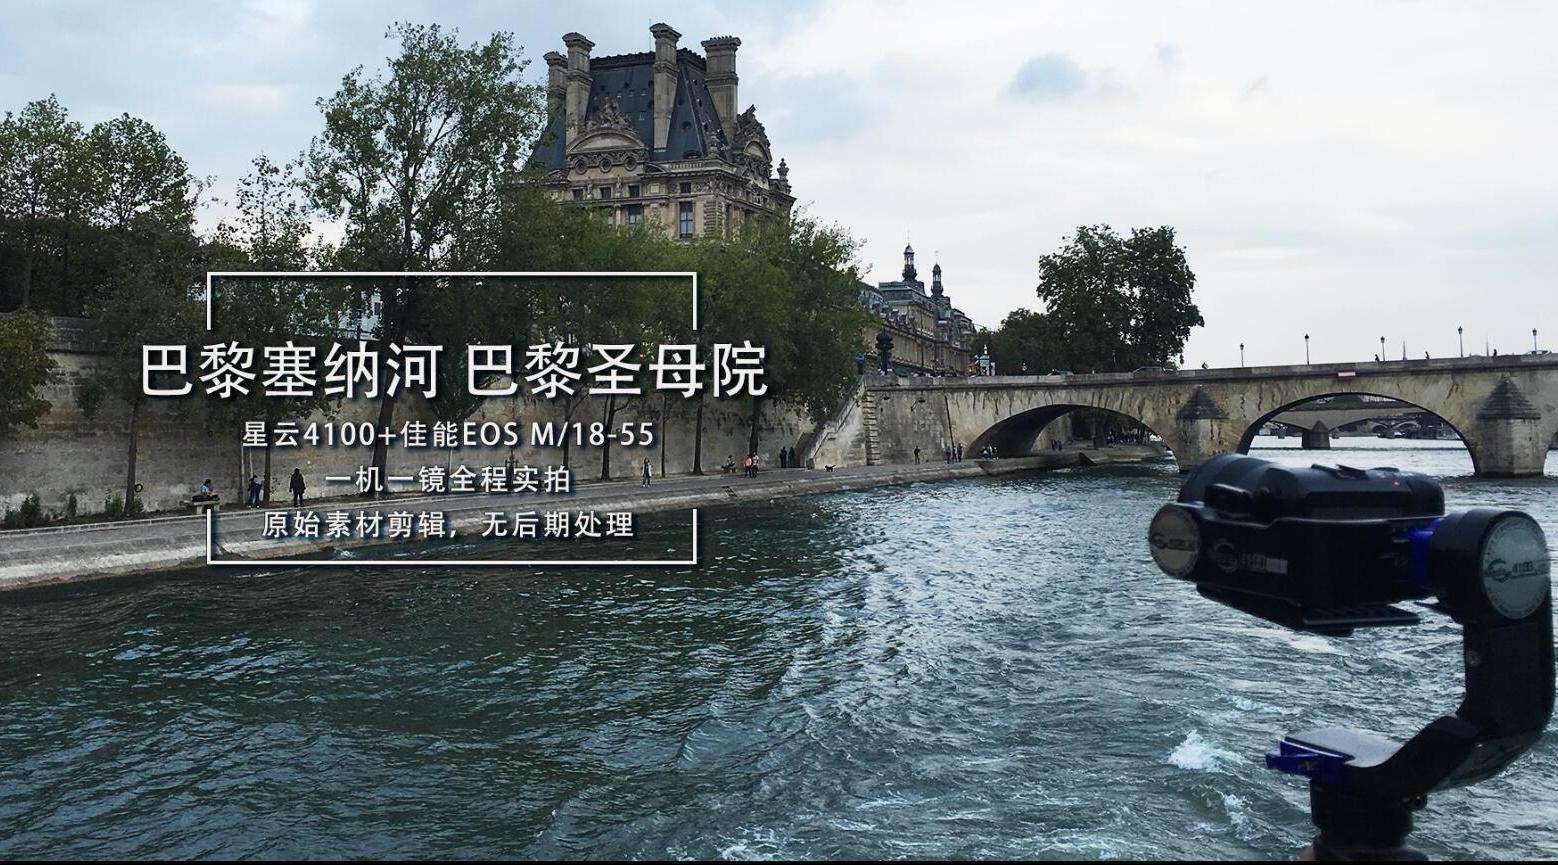 纪录片丨印象欧洲——塞纳河&巴黎圣母院